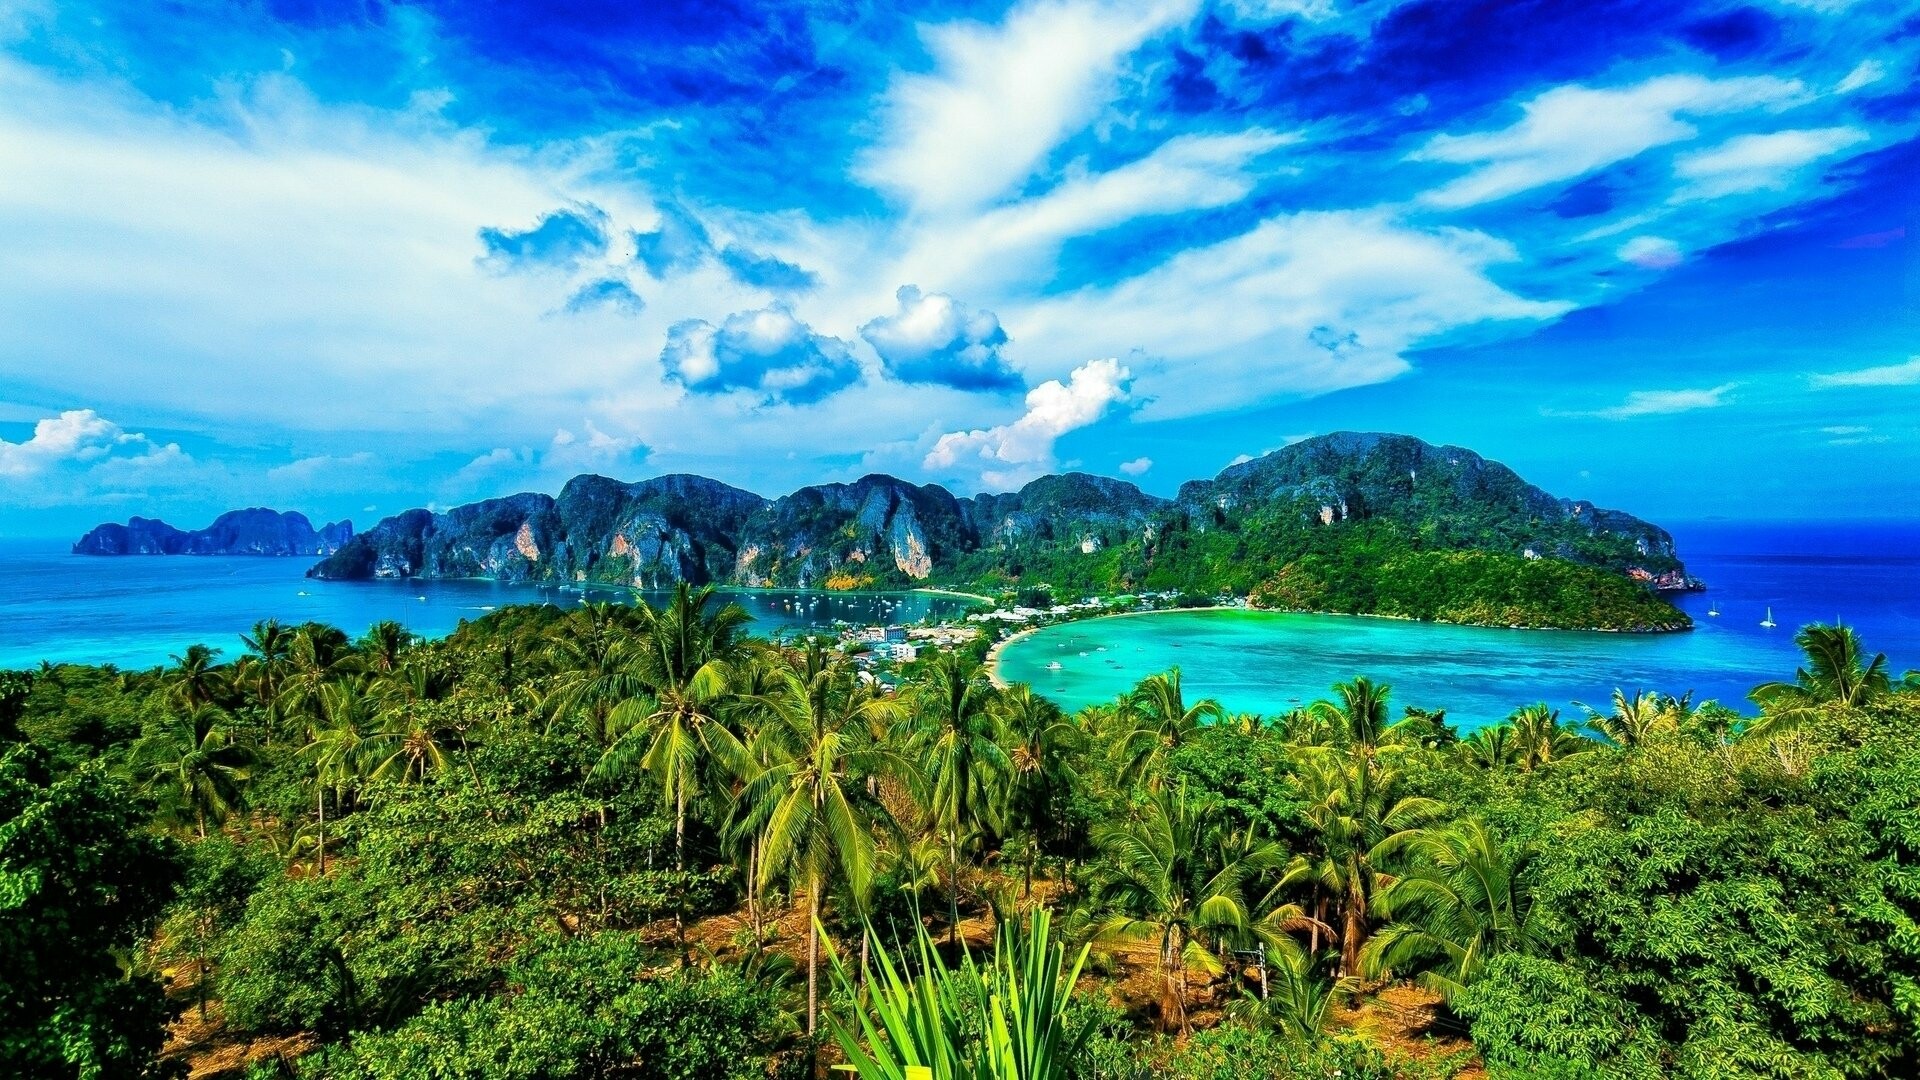 Phi Phi: A six-island archipelago, Thailand’s Andaman coast. 1920x1080 Full HD Wallpaper.